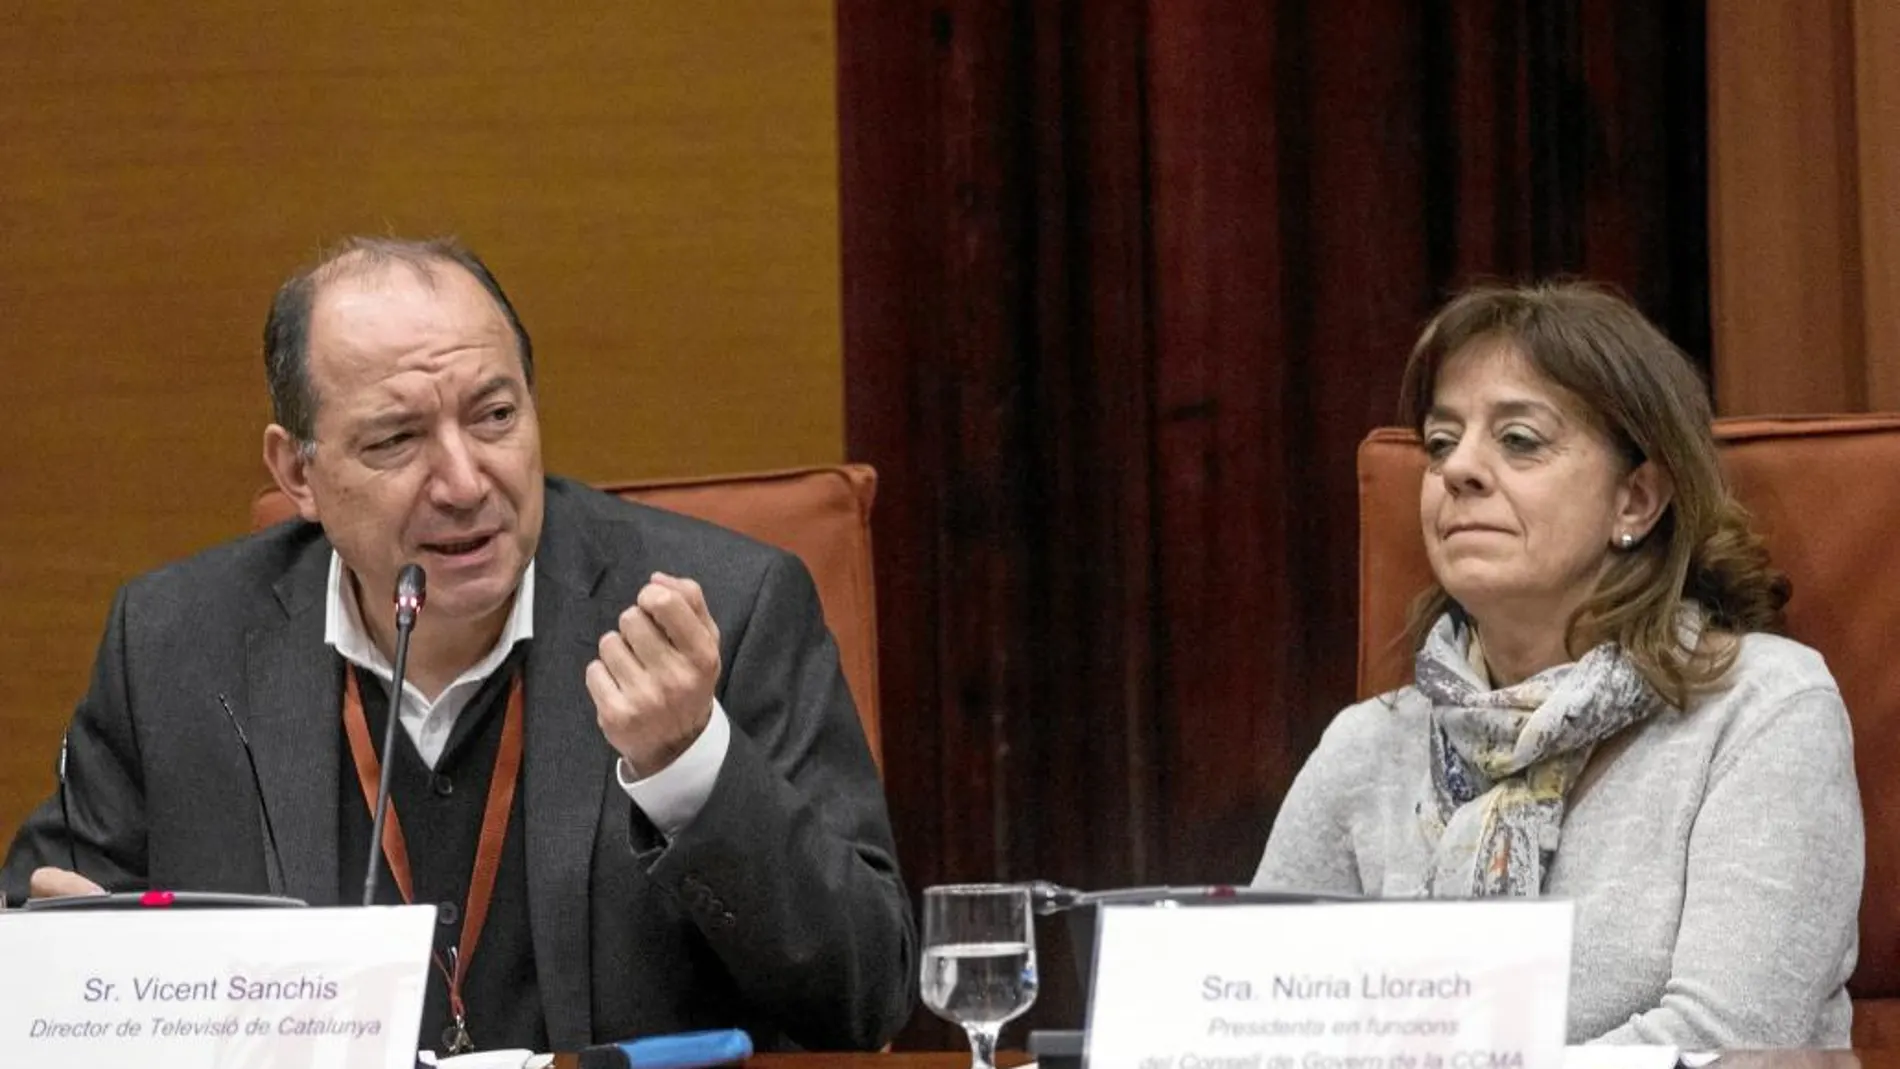 Vicent Sanchis, director de TV3, y Núria Llorach, presidenta de la CCMA, en el Parlament el pasado 24 de marzo